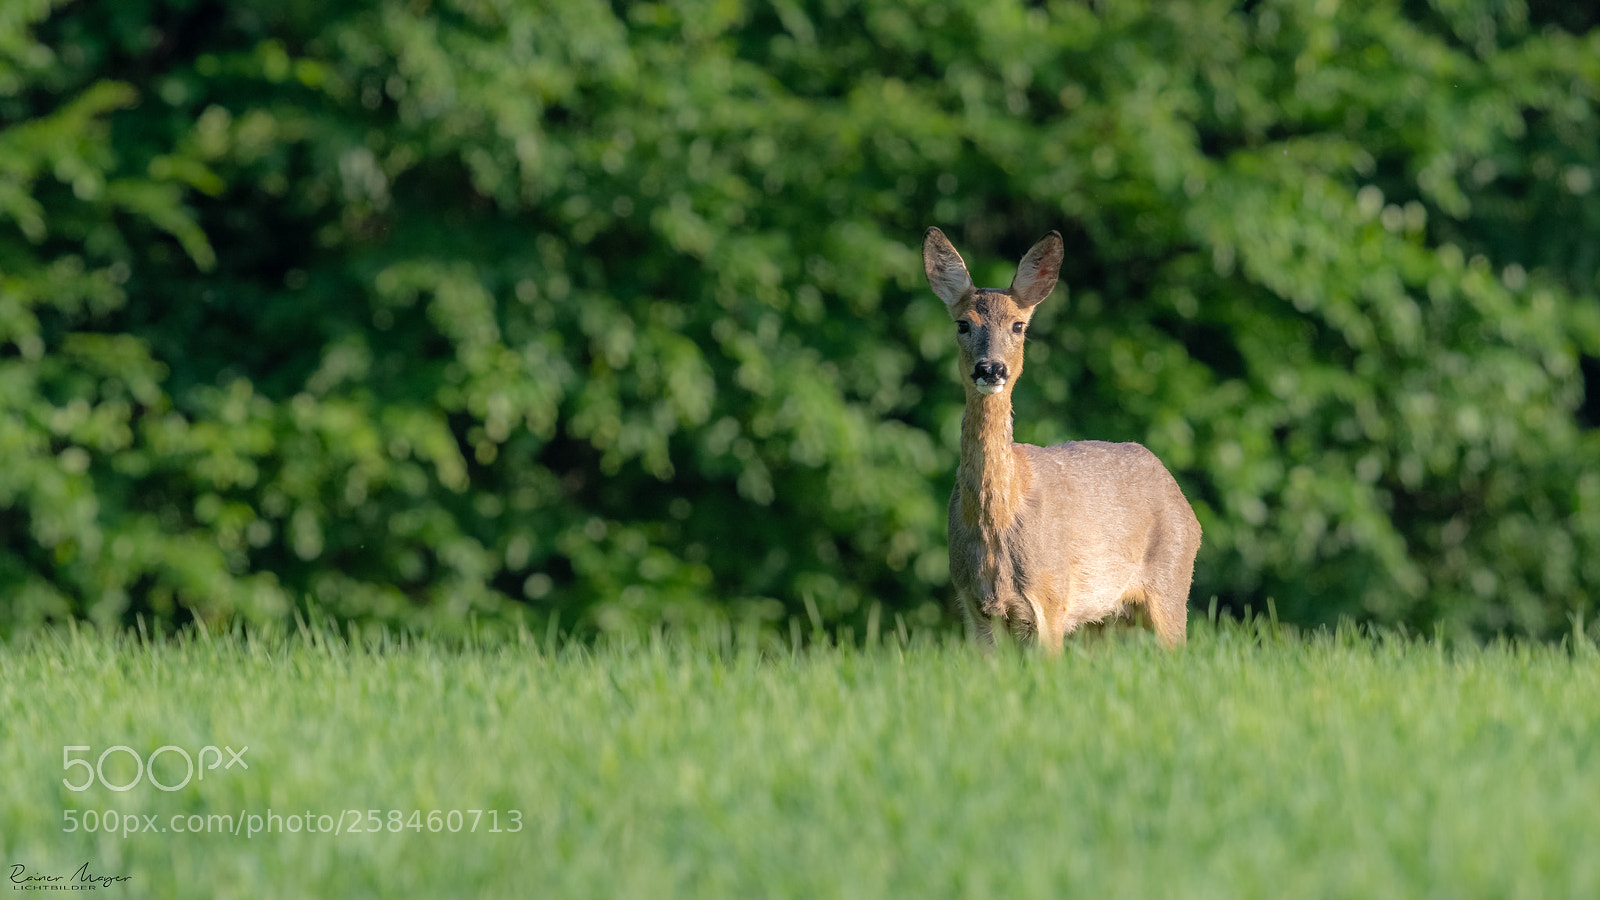 Nikon D500 sample photo. #180 - deer photography